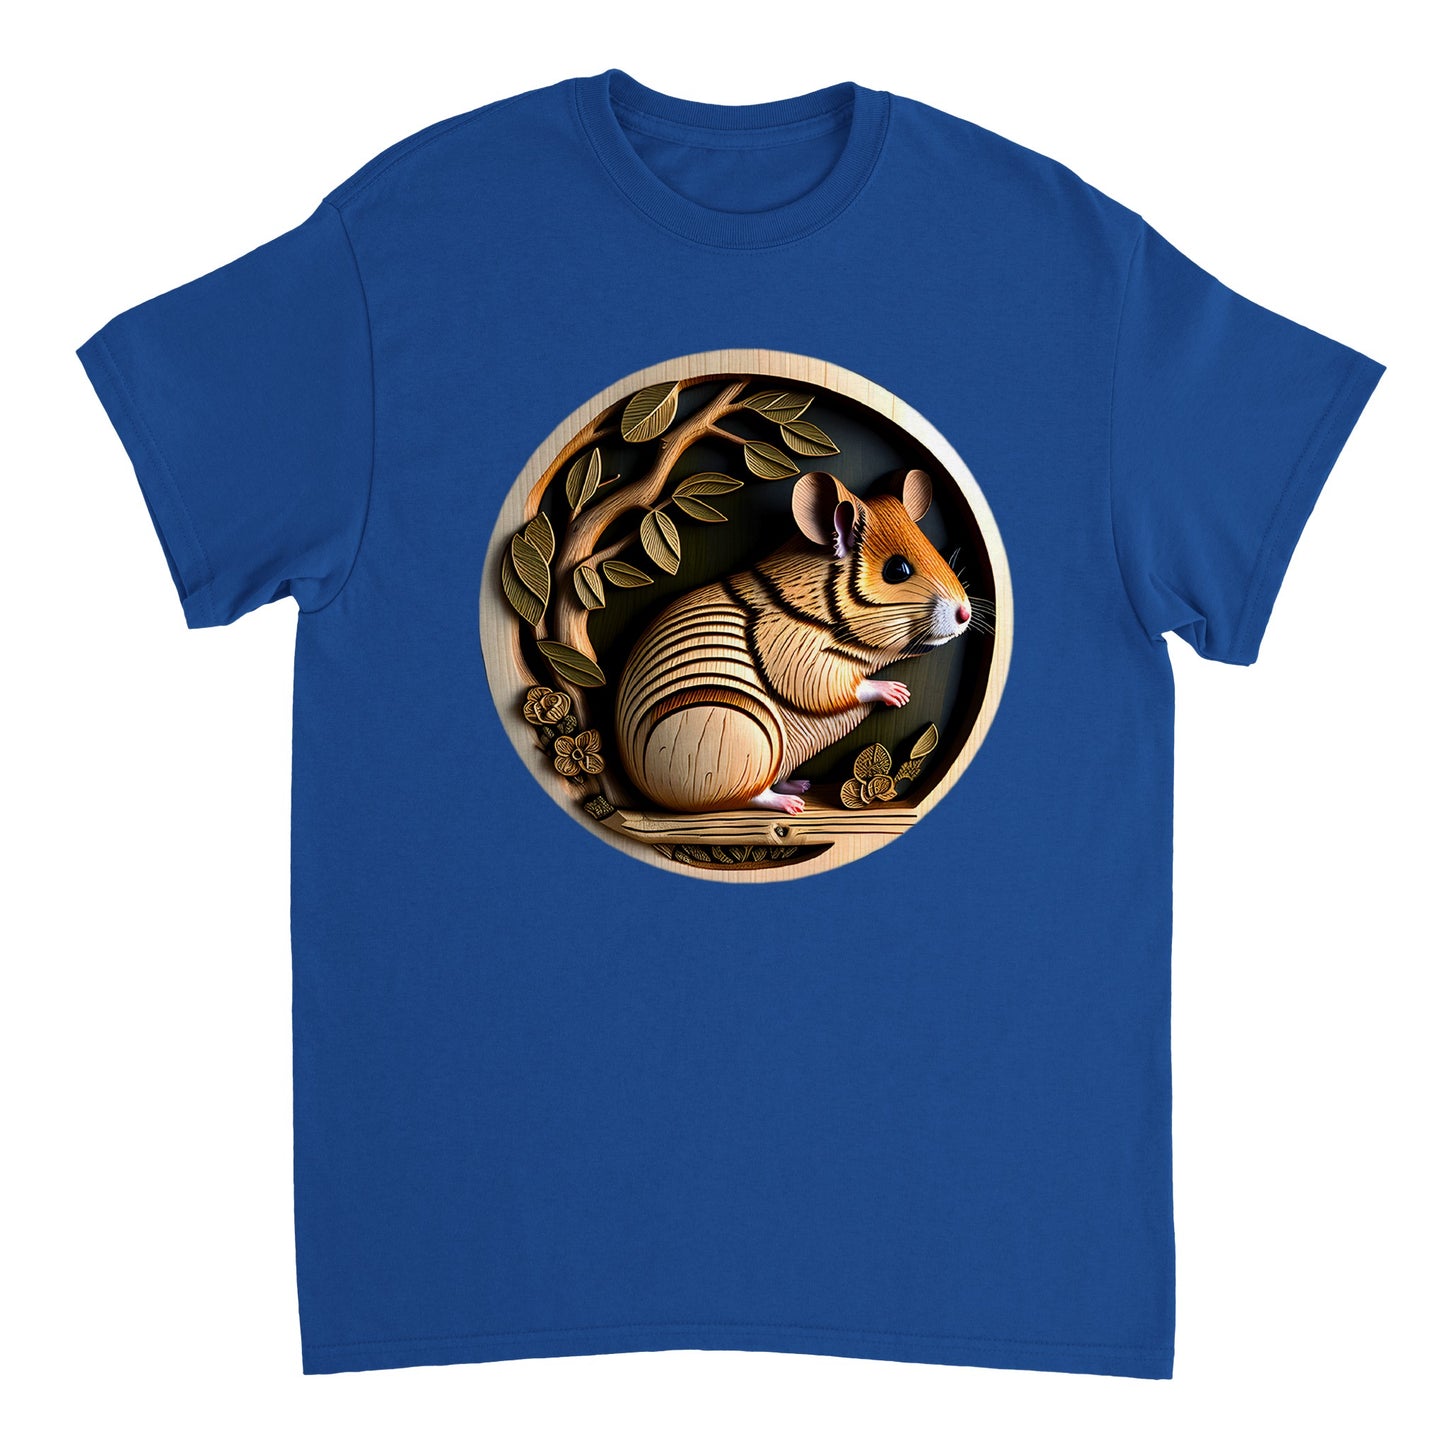 3D Wooden Animal Art - Heavyweight Unisex Crewneck T-shirt 20